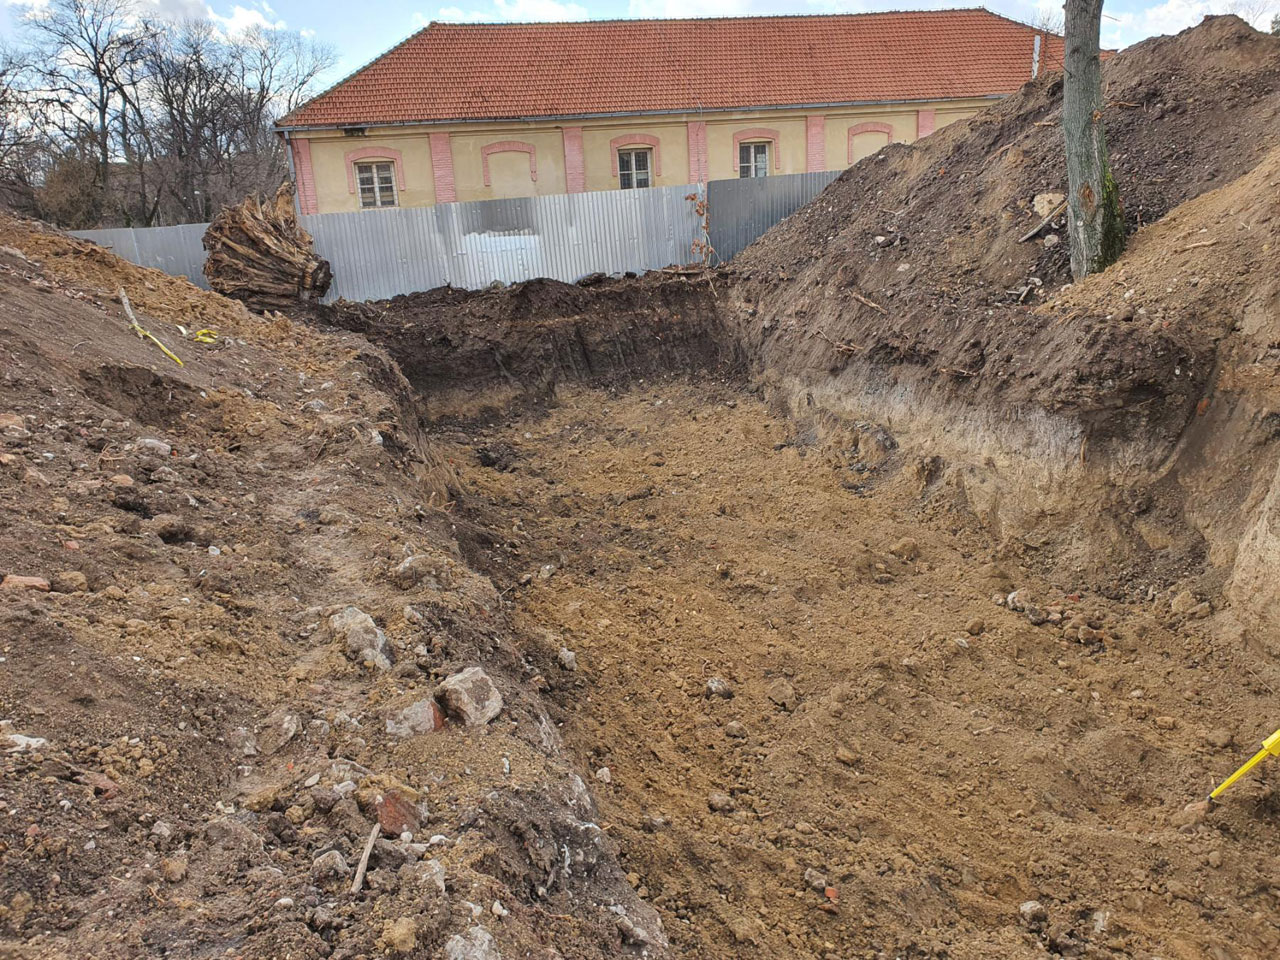  Контрола квалитета и уништавање НУС на локацији „Стеван Синђелић“ у Нишу   